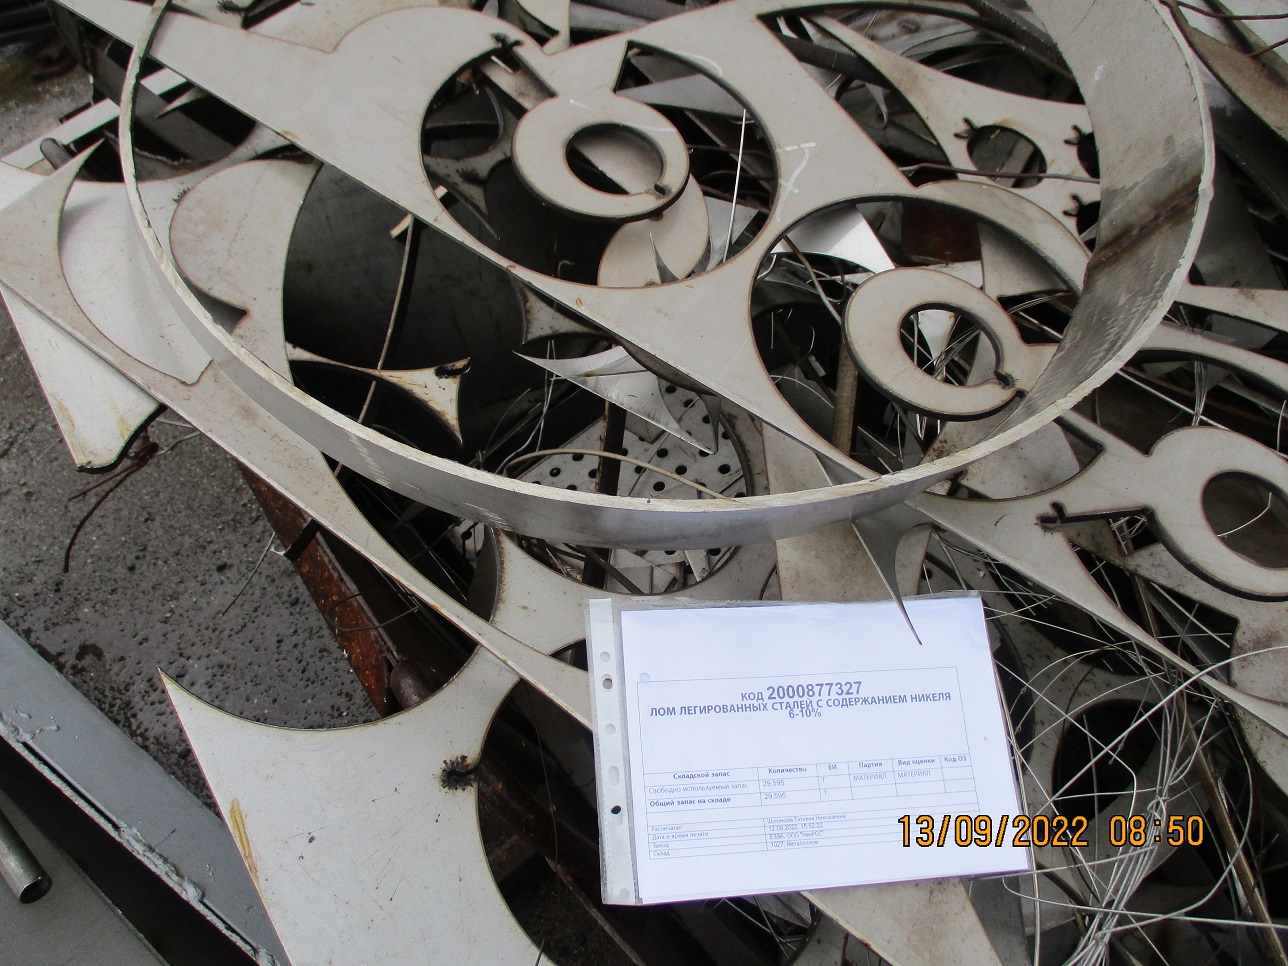 183942 - Реализация лома легированных сталей с содержанием никеля 6-10% ООО "НевРСС"-0